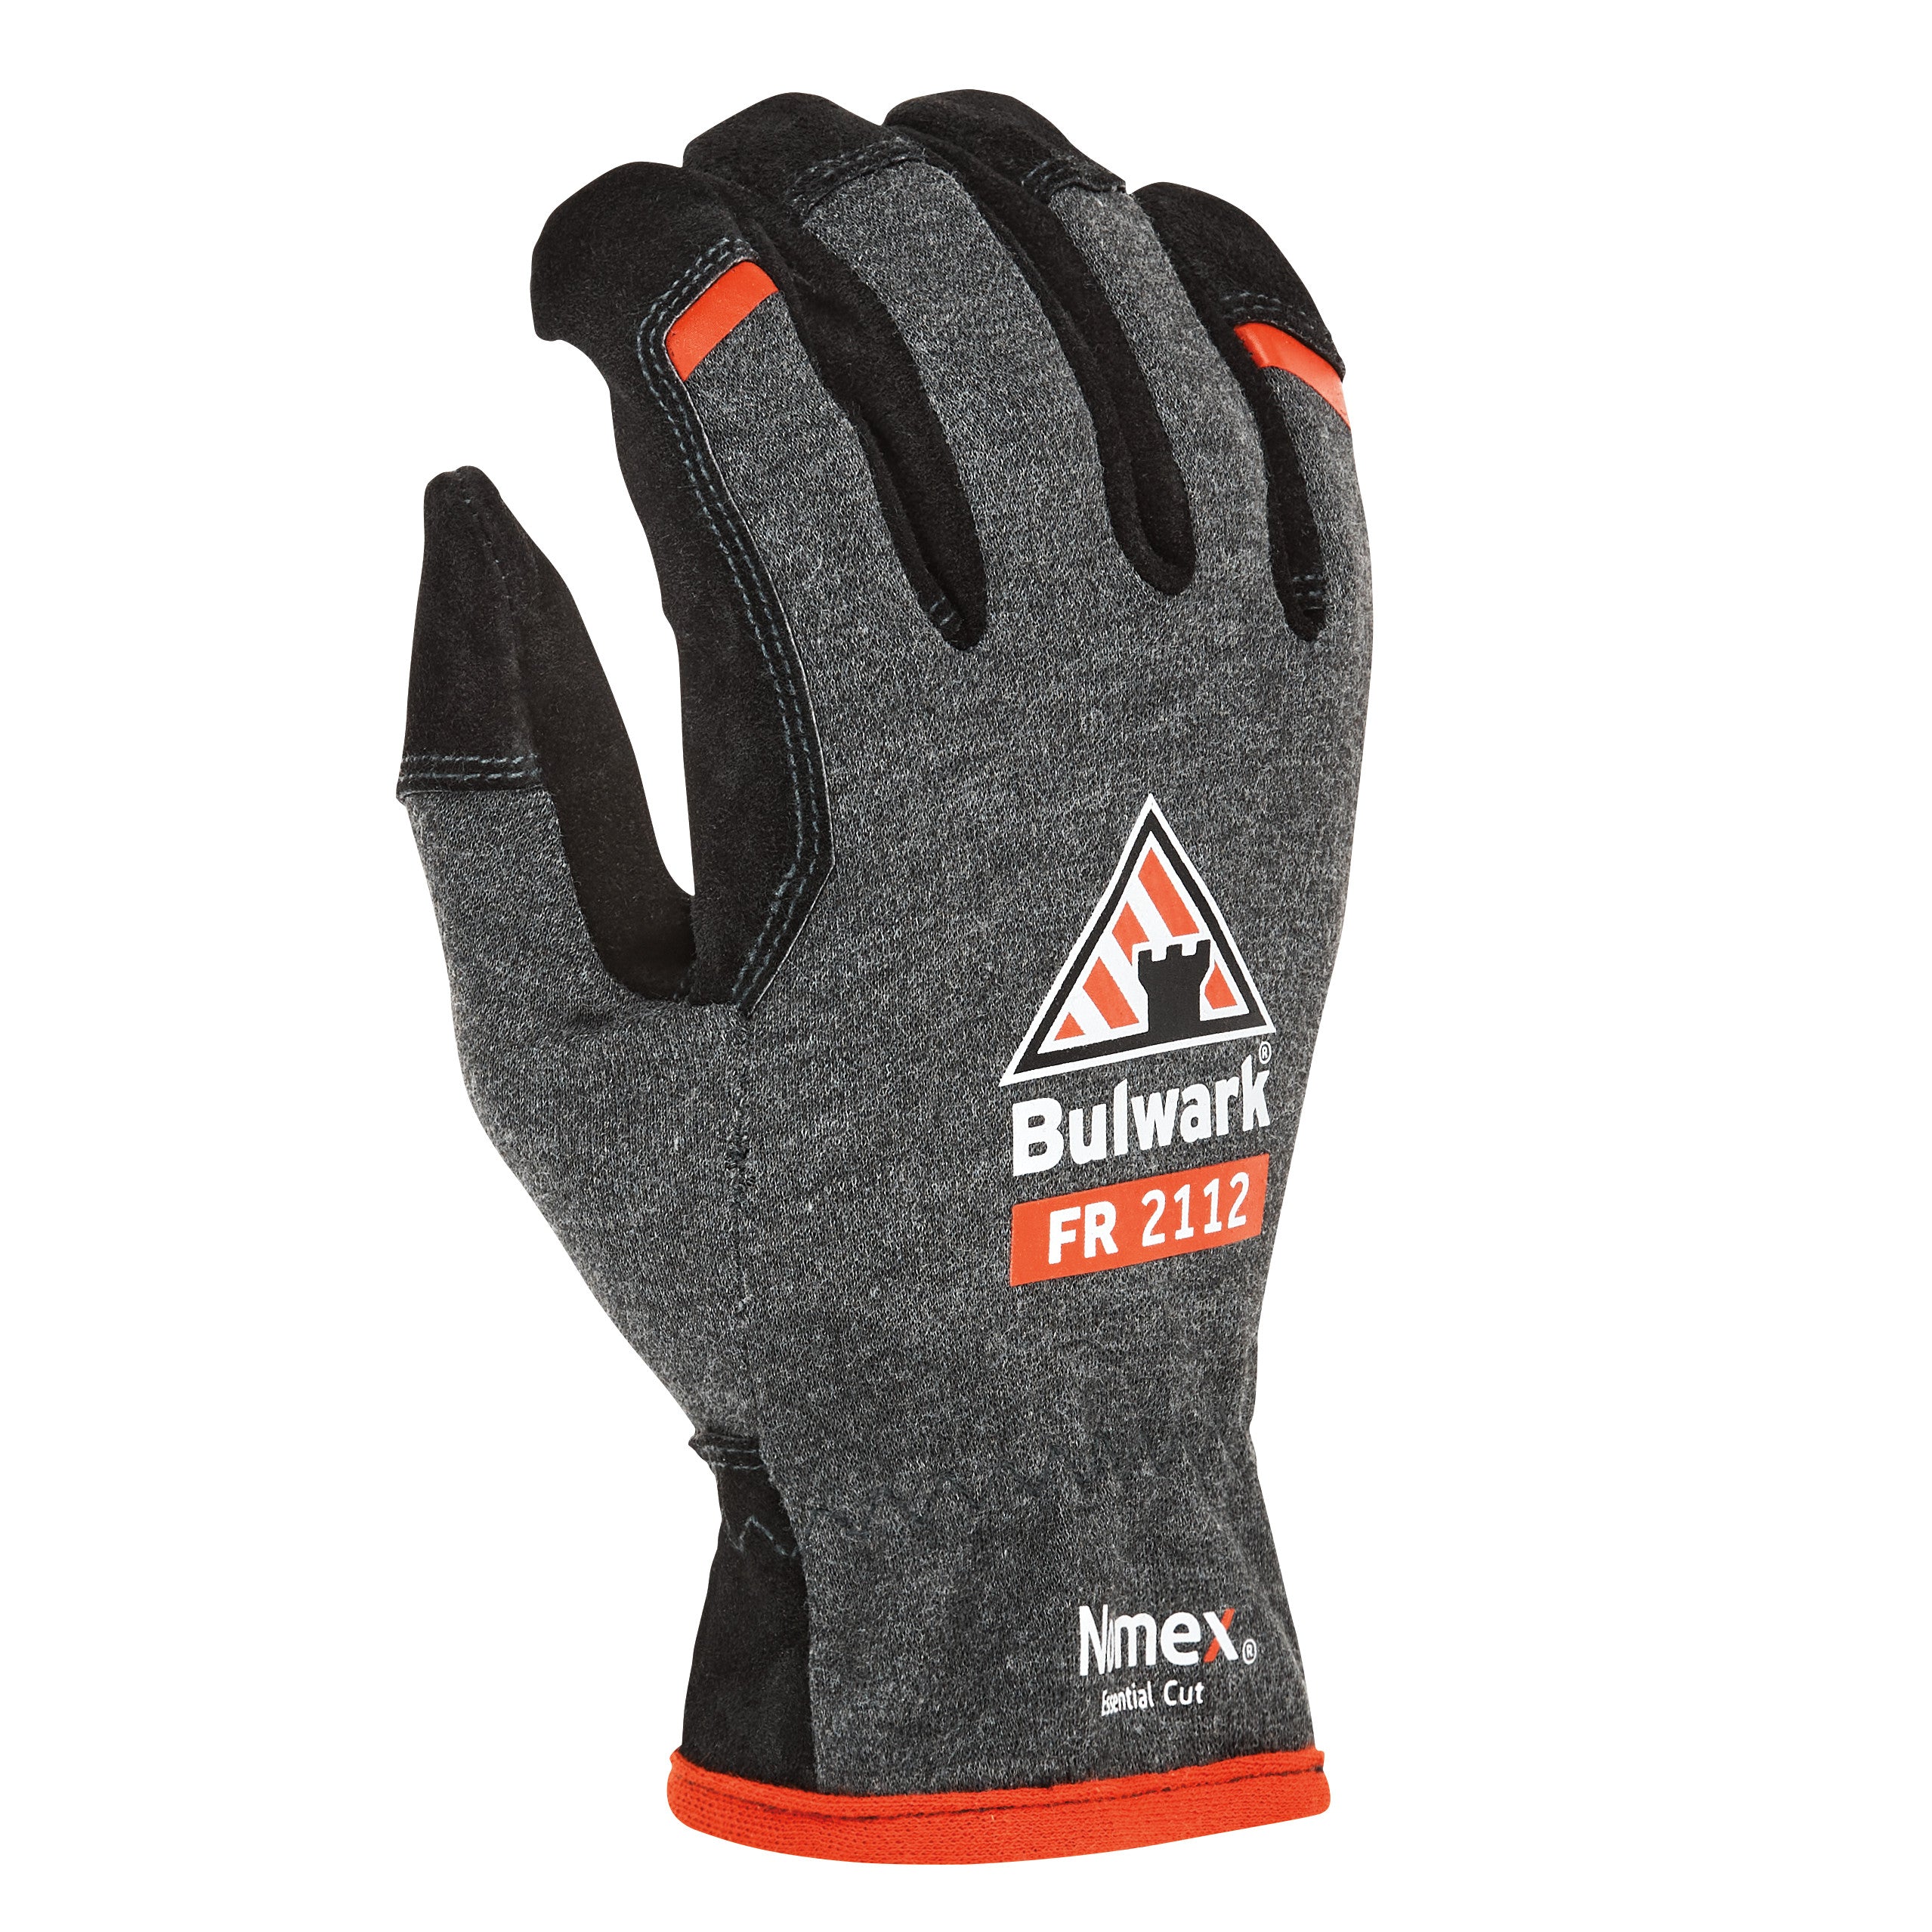 Accessories - Gloves GS10 - Grey|Black